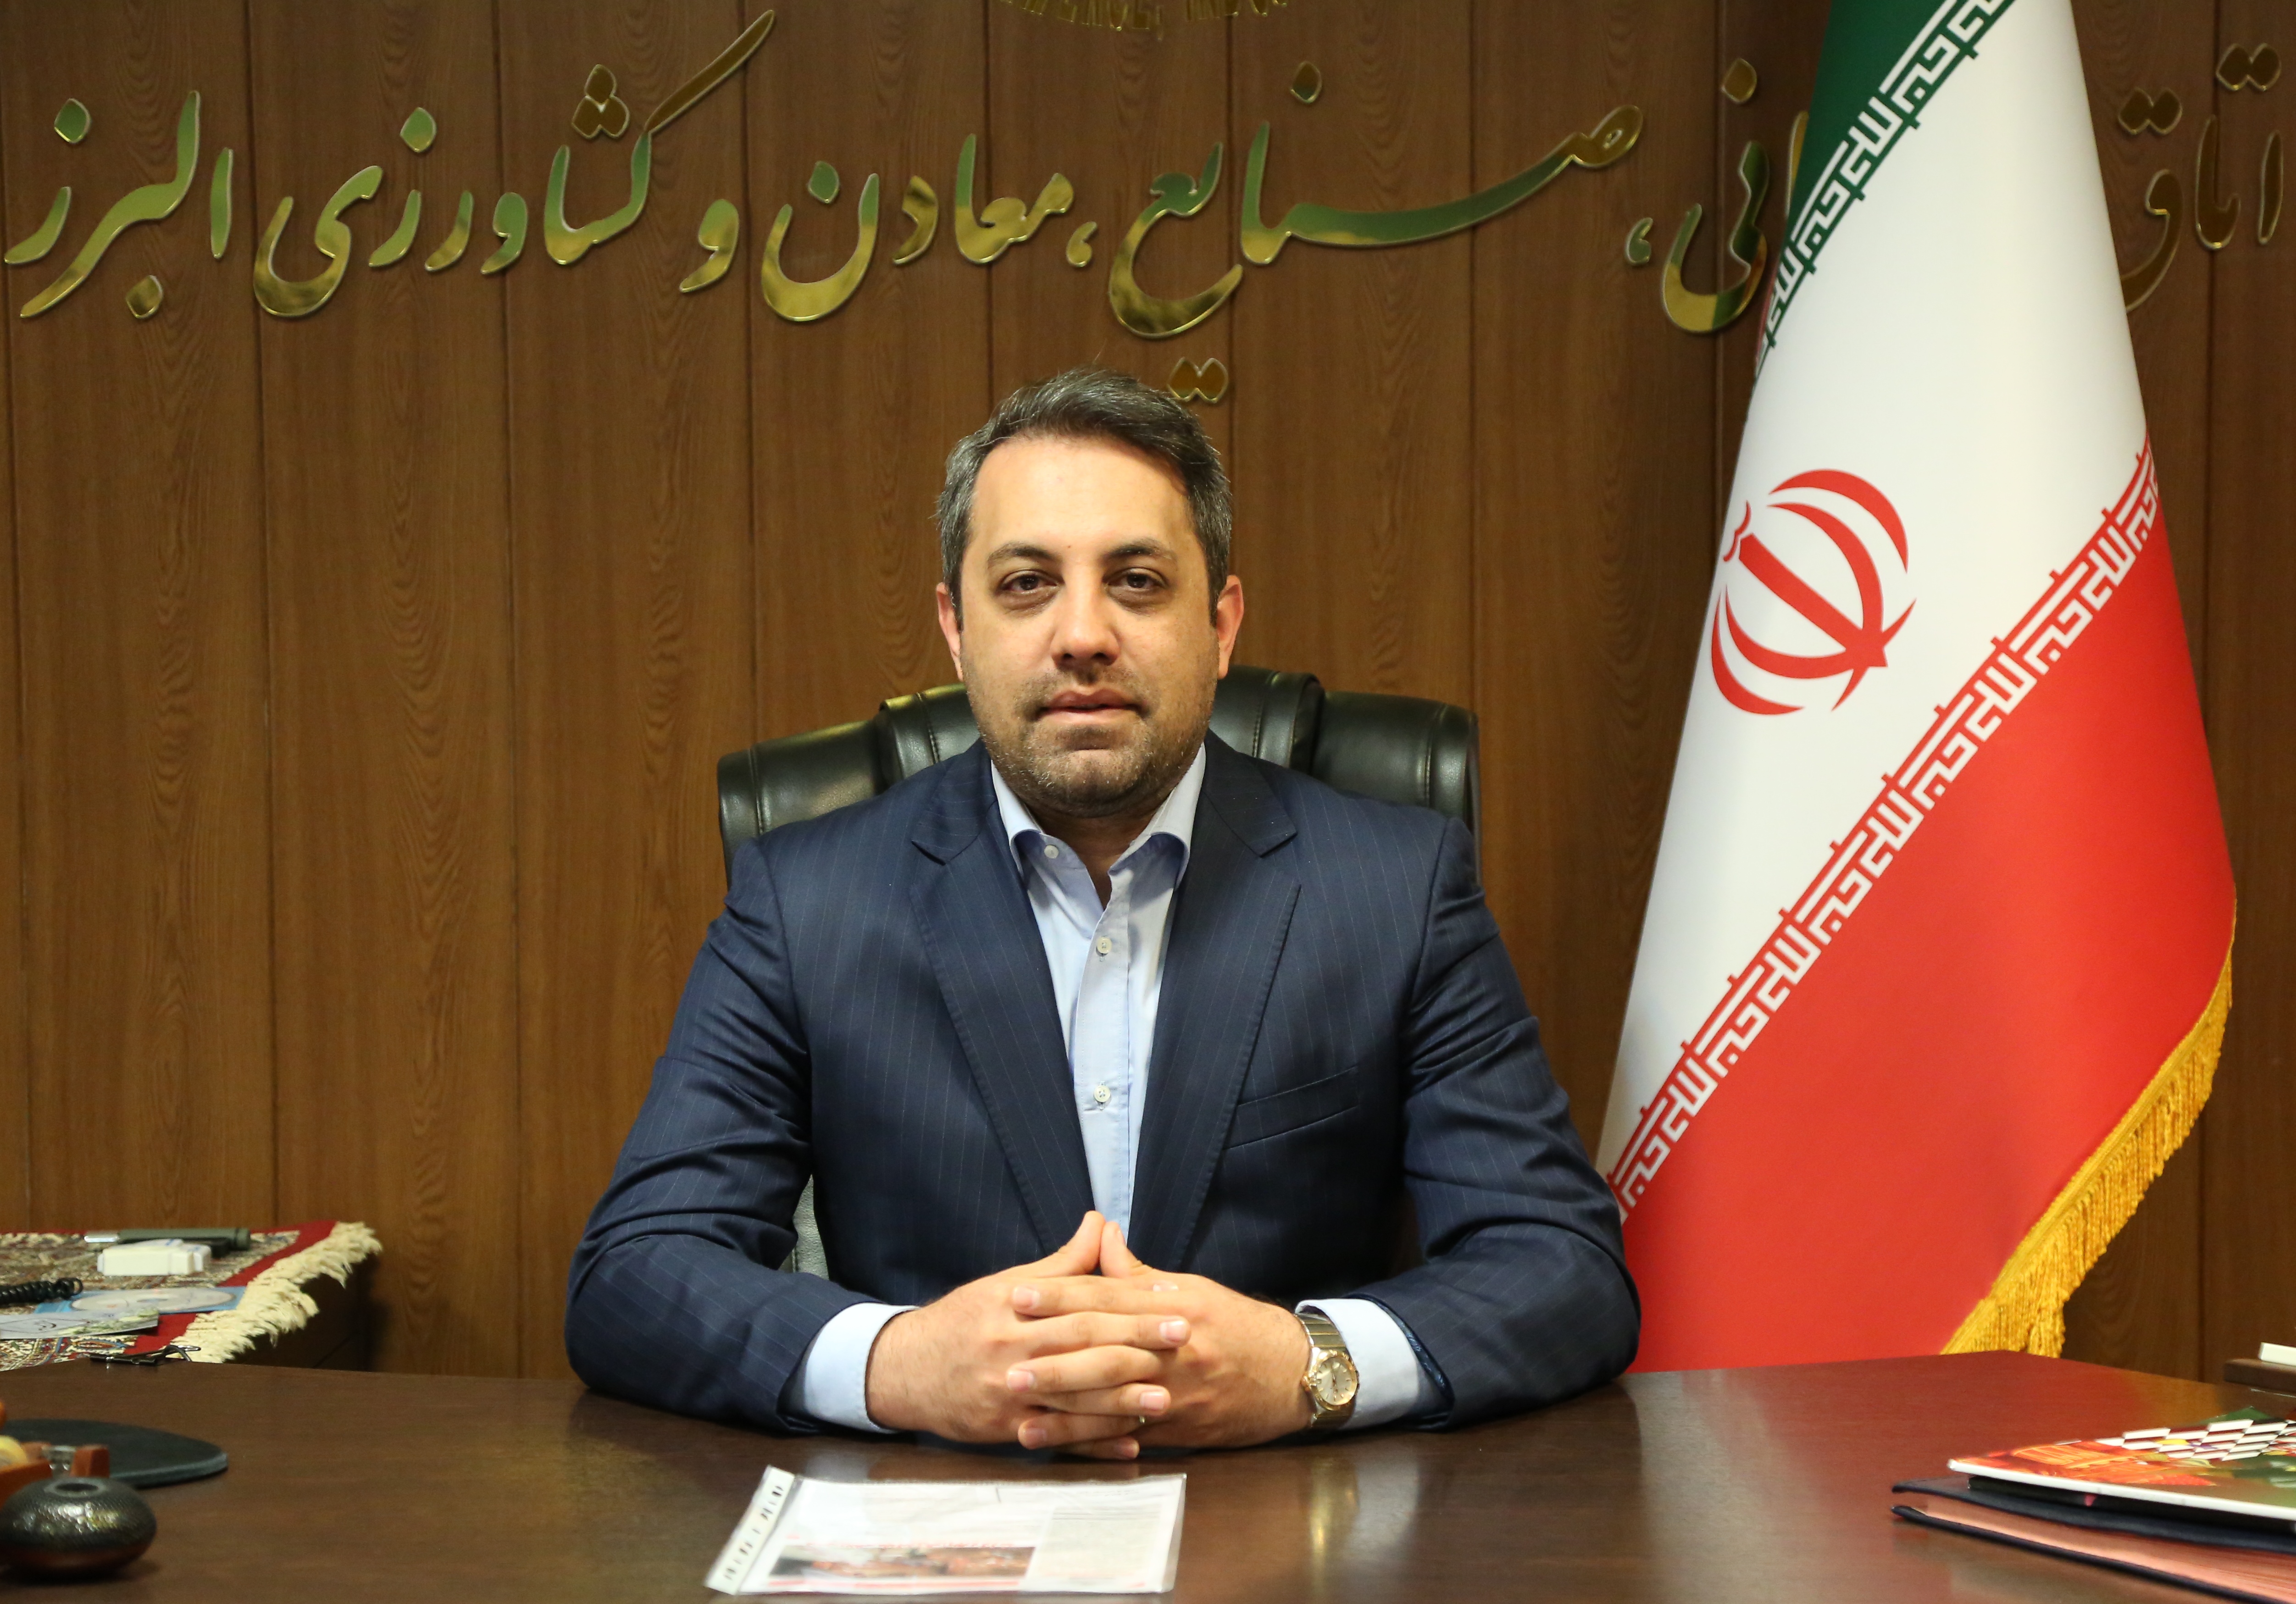 پیام تبریک رئیس اتاق بازرگانی البرز به مناسبت روز خبرنگار